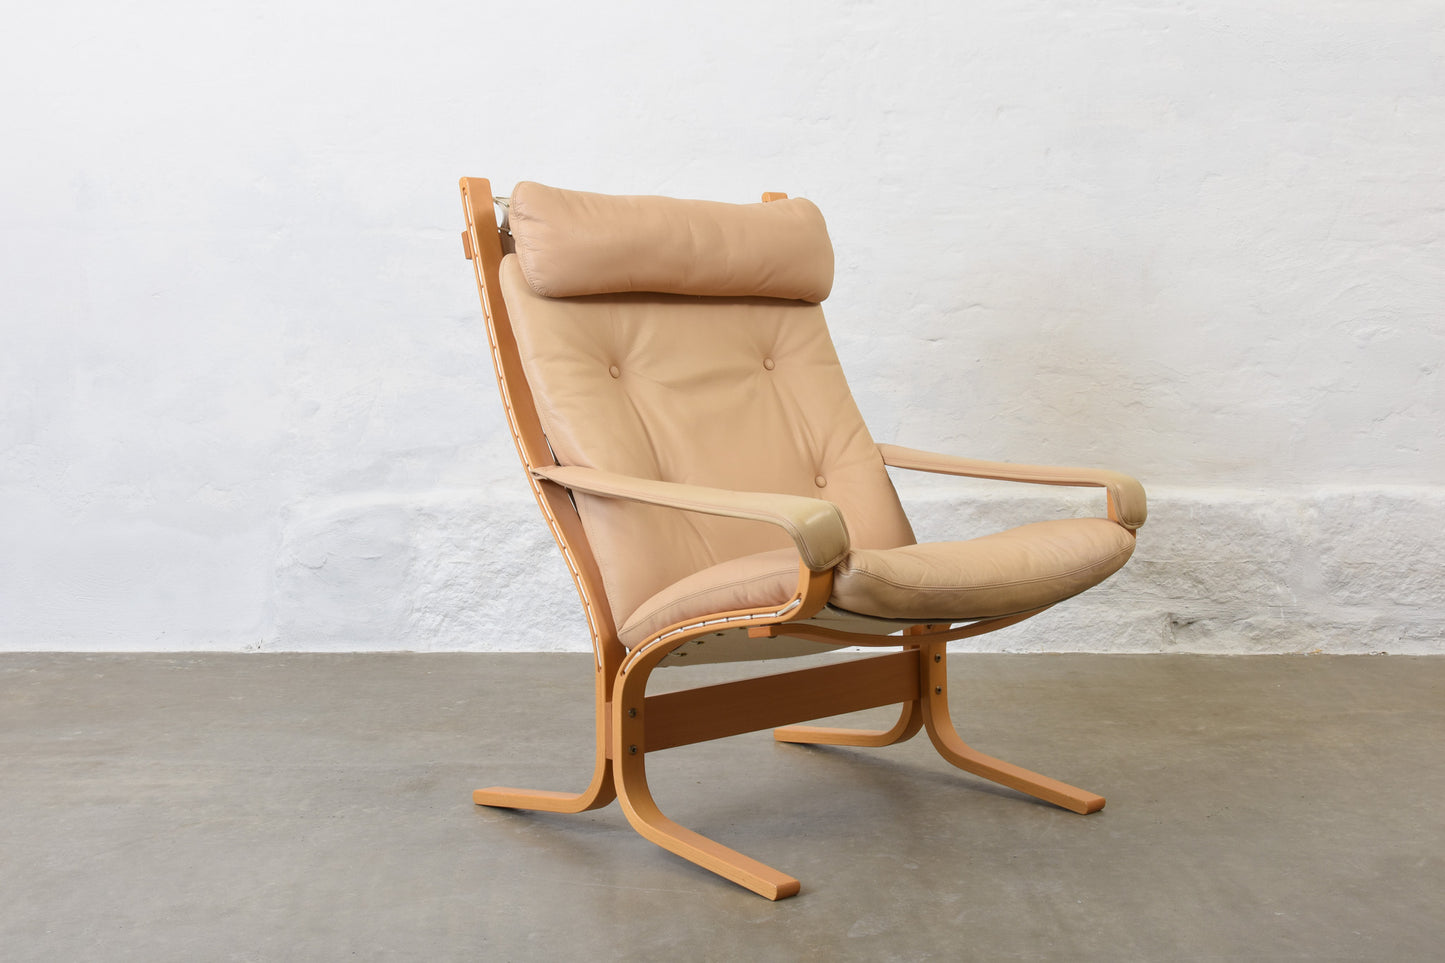 'Siesta' chair by Ingmar Relling